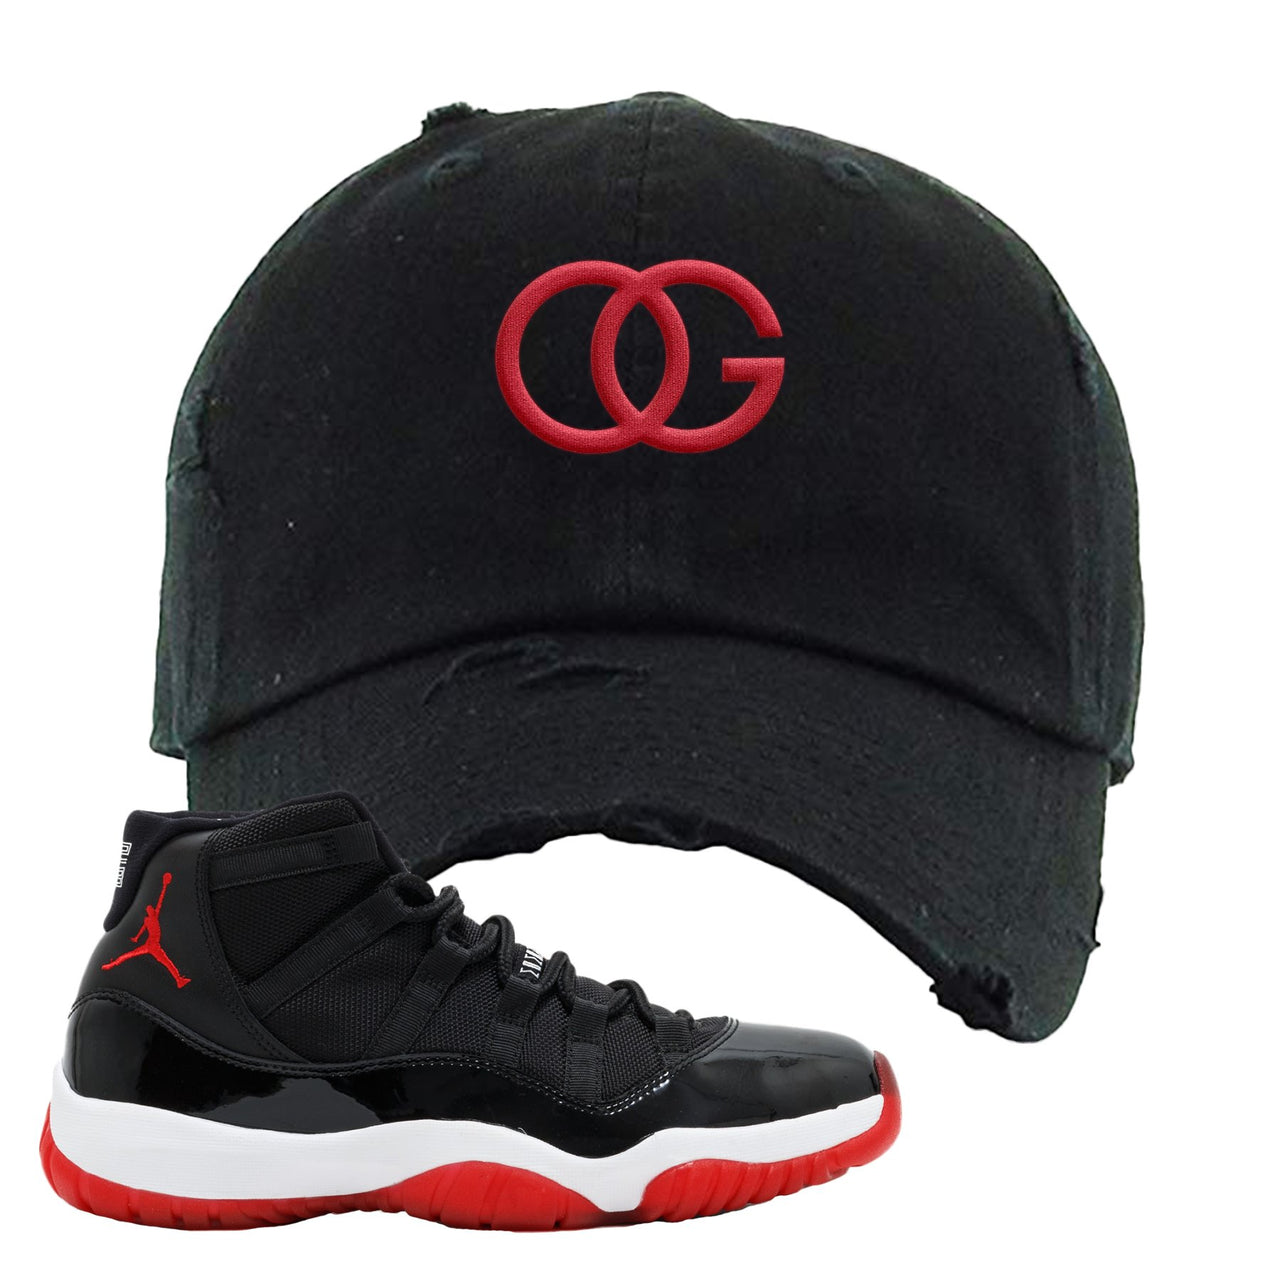 Jordan 11 Bred OG Black Sneaker Hook Up Distressed Dad Hat